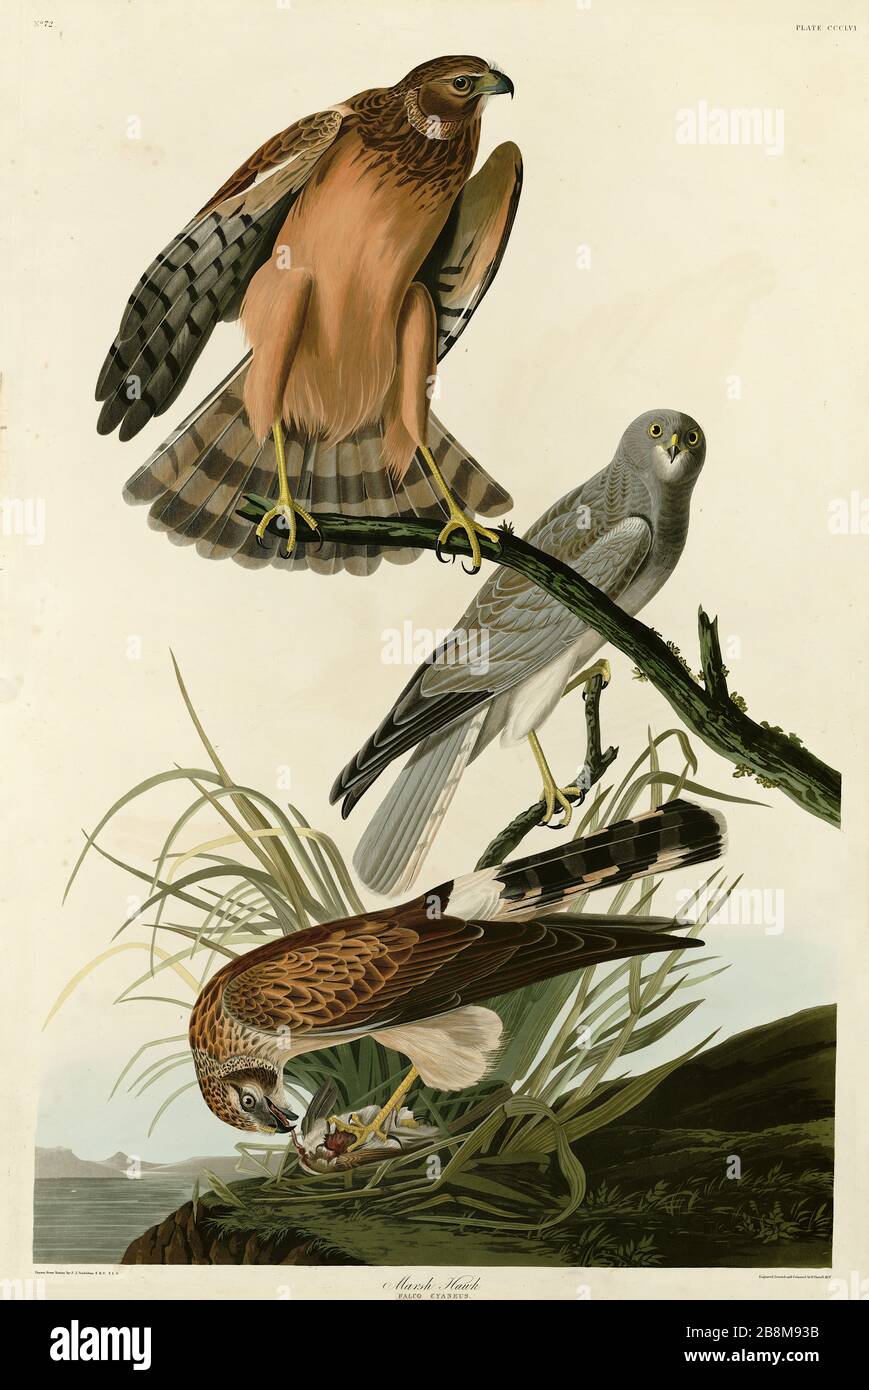 Plate 356 Marsh Hawk (Northern Harrier) von The Birds of America Folio (18218-188) von John James Audubon - sehr hochauflösendes, qualitativ hochwertiges Bild Stockfoto